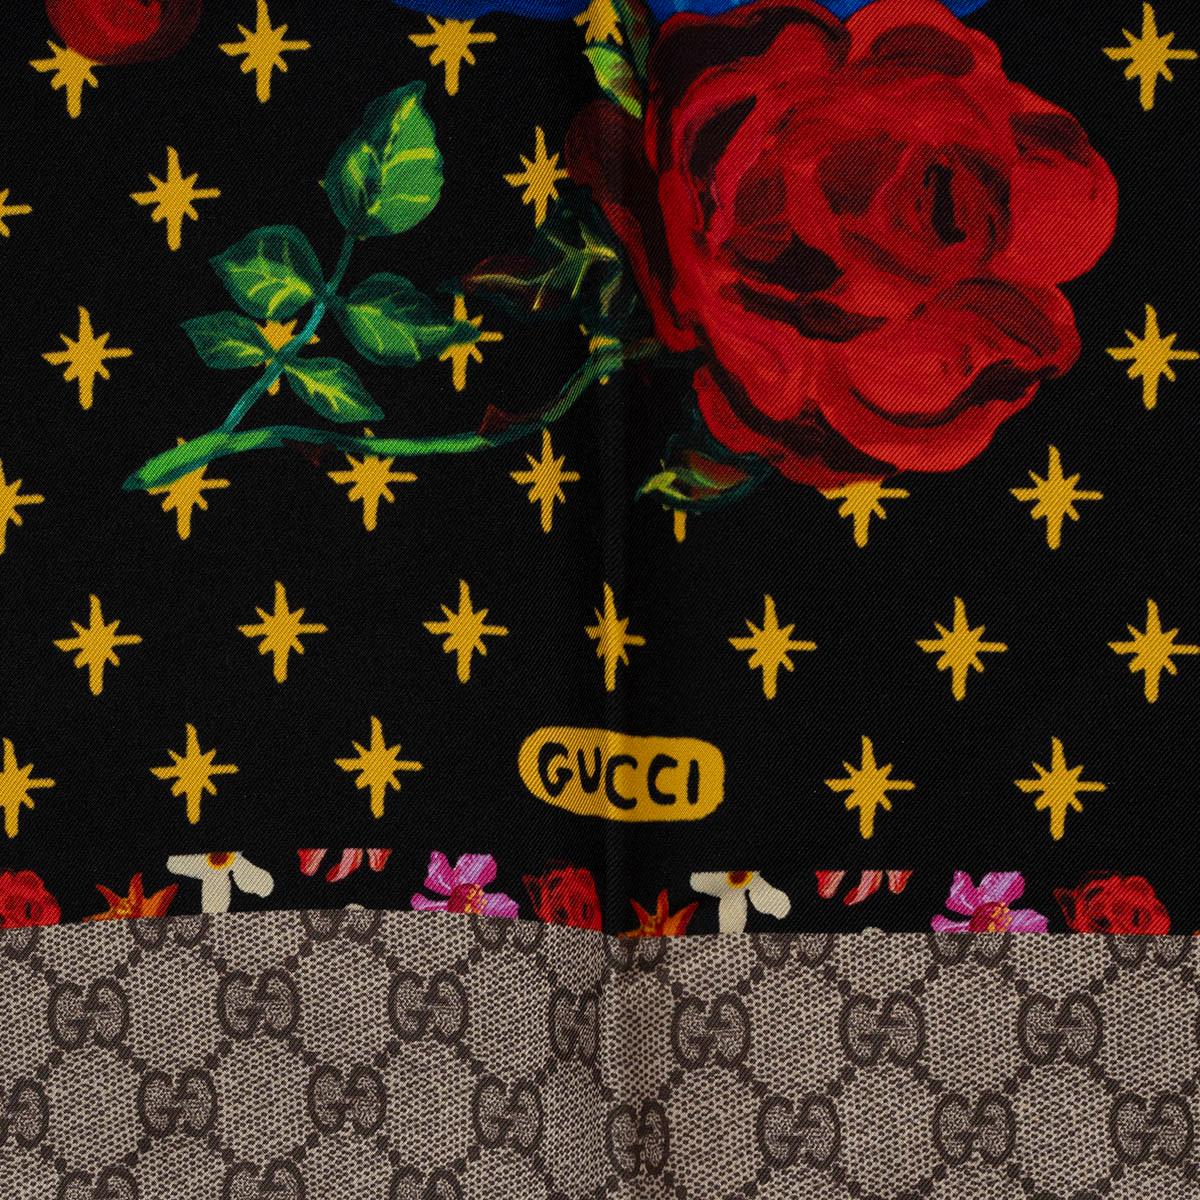 100% authentique écharpe Gucci en soie noire (100%) avec imprimé chiens d'épagneul et vase multicolores et bordure en GG taupe. A été porté et est en excellent état. 

Mesures
Largeur	90cm (35.1in)
Longueur	90cm (35.1in)

Toutes nos annonces ne